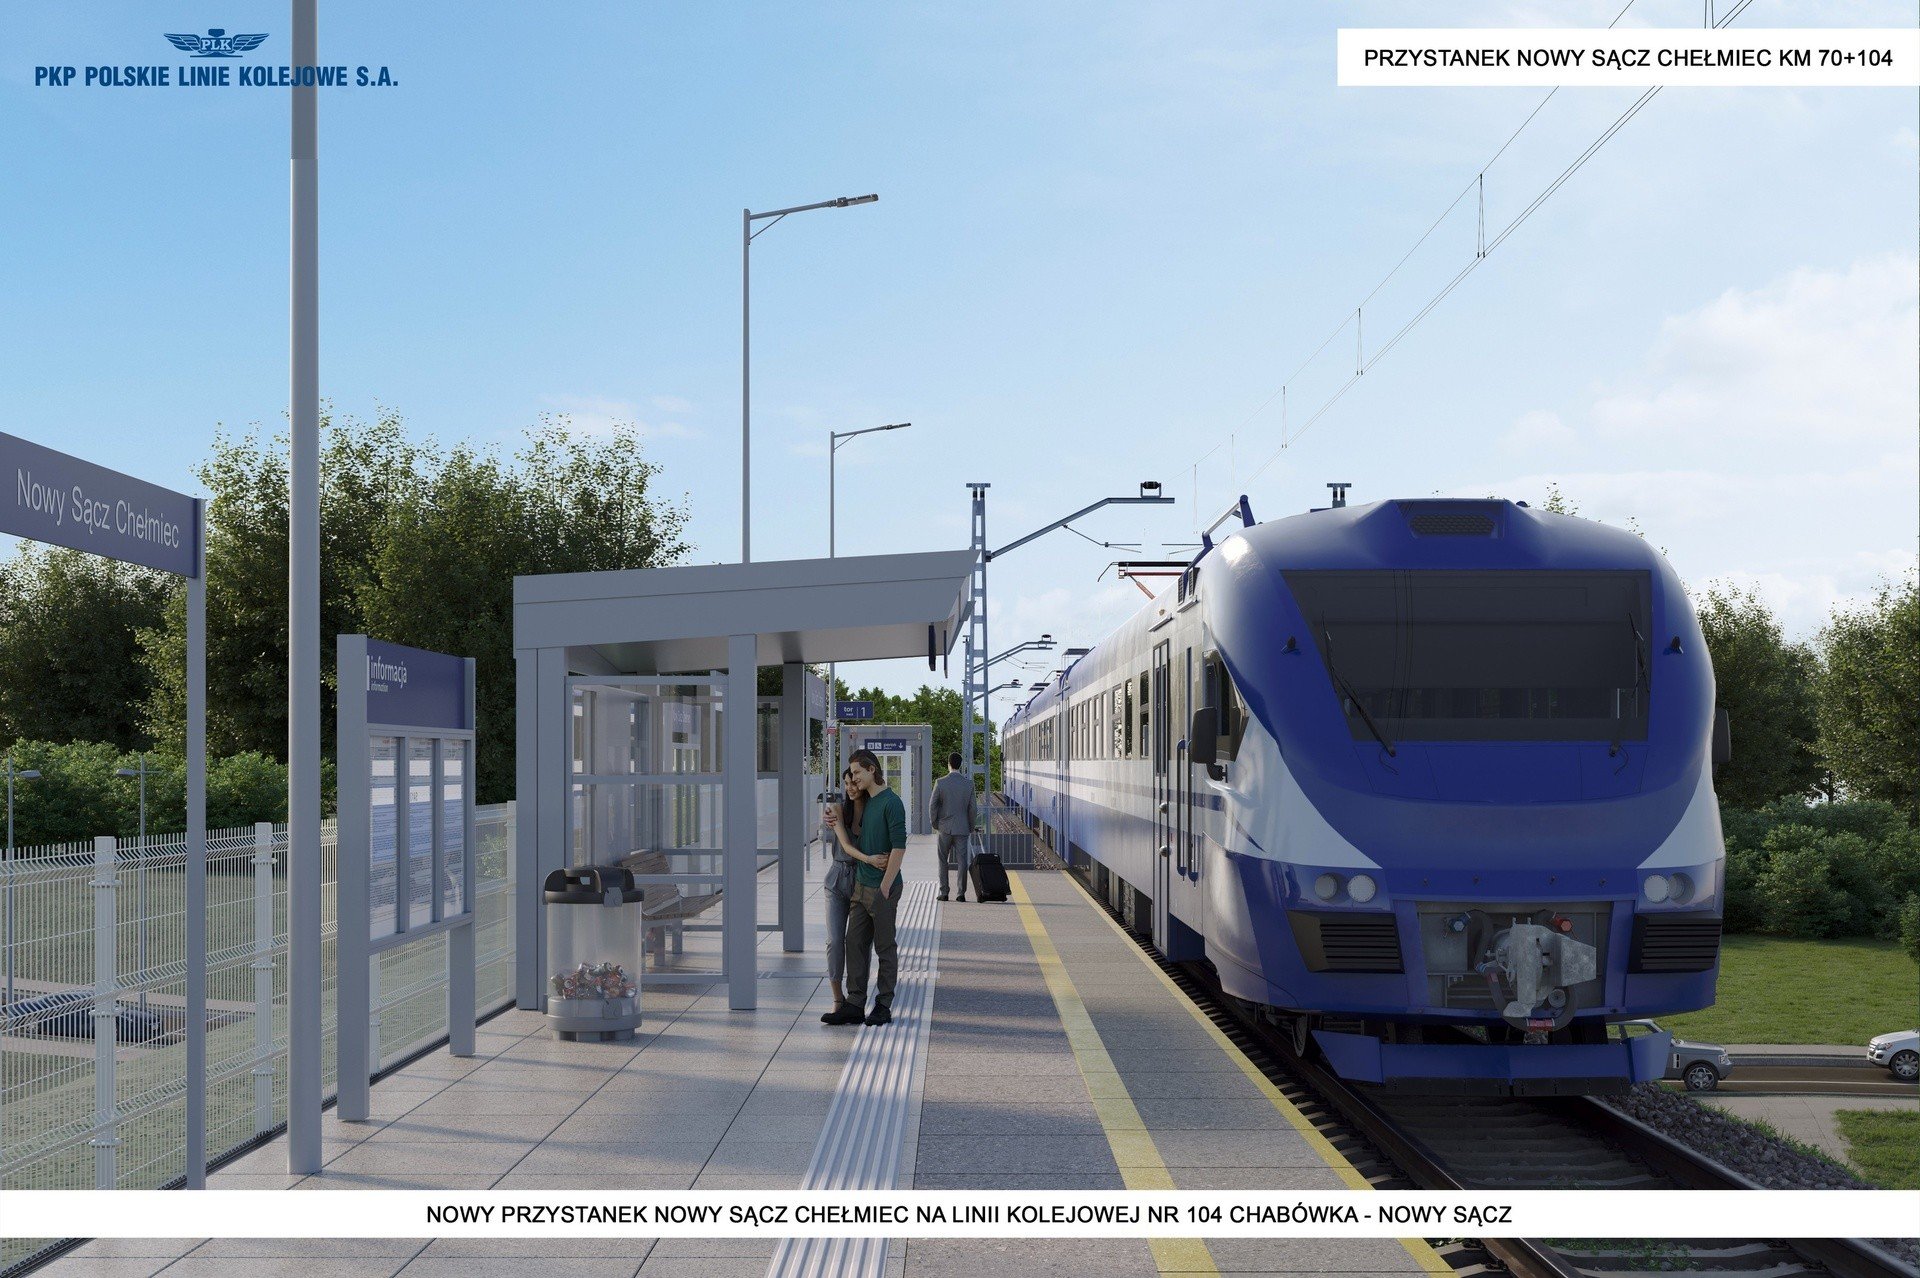 Tak ma wyglądać newralgiczna linia kolejowa w Małopolsce! [WIZUALIZACJE]  24.04 | Gazeta Krakowska